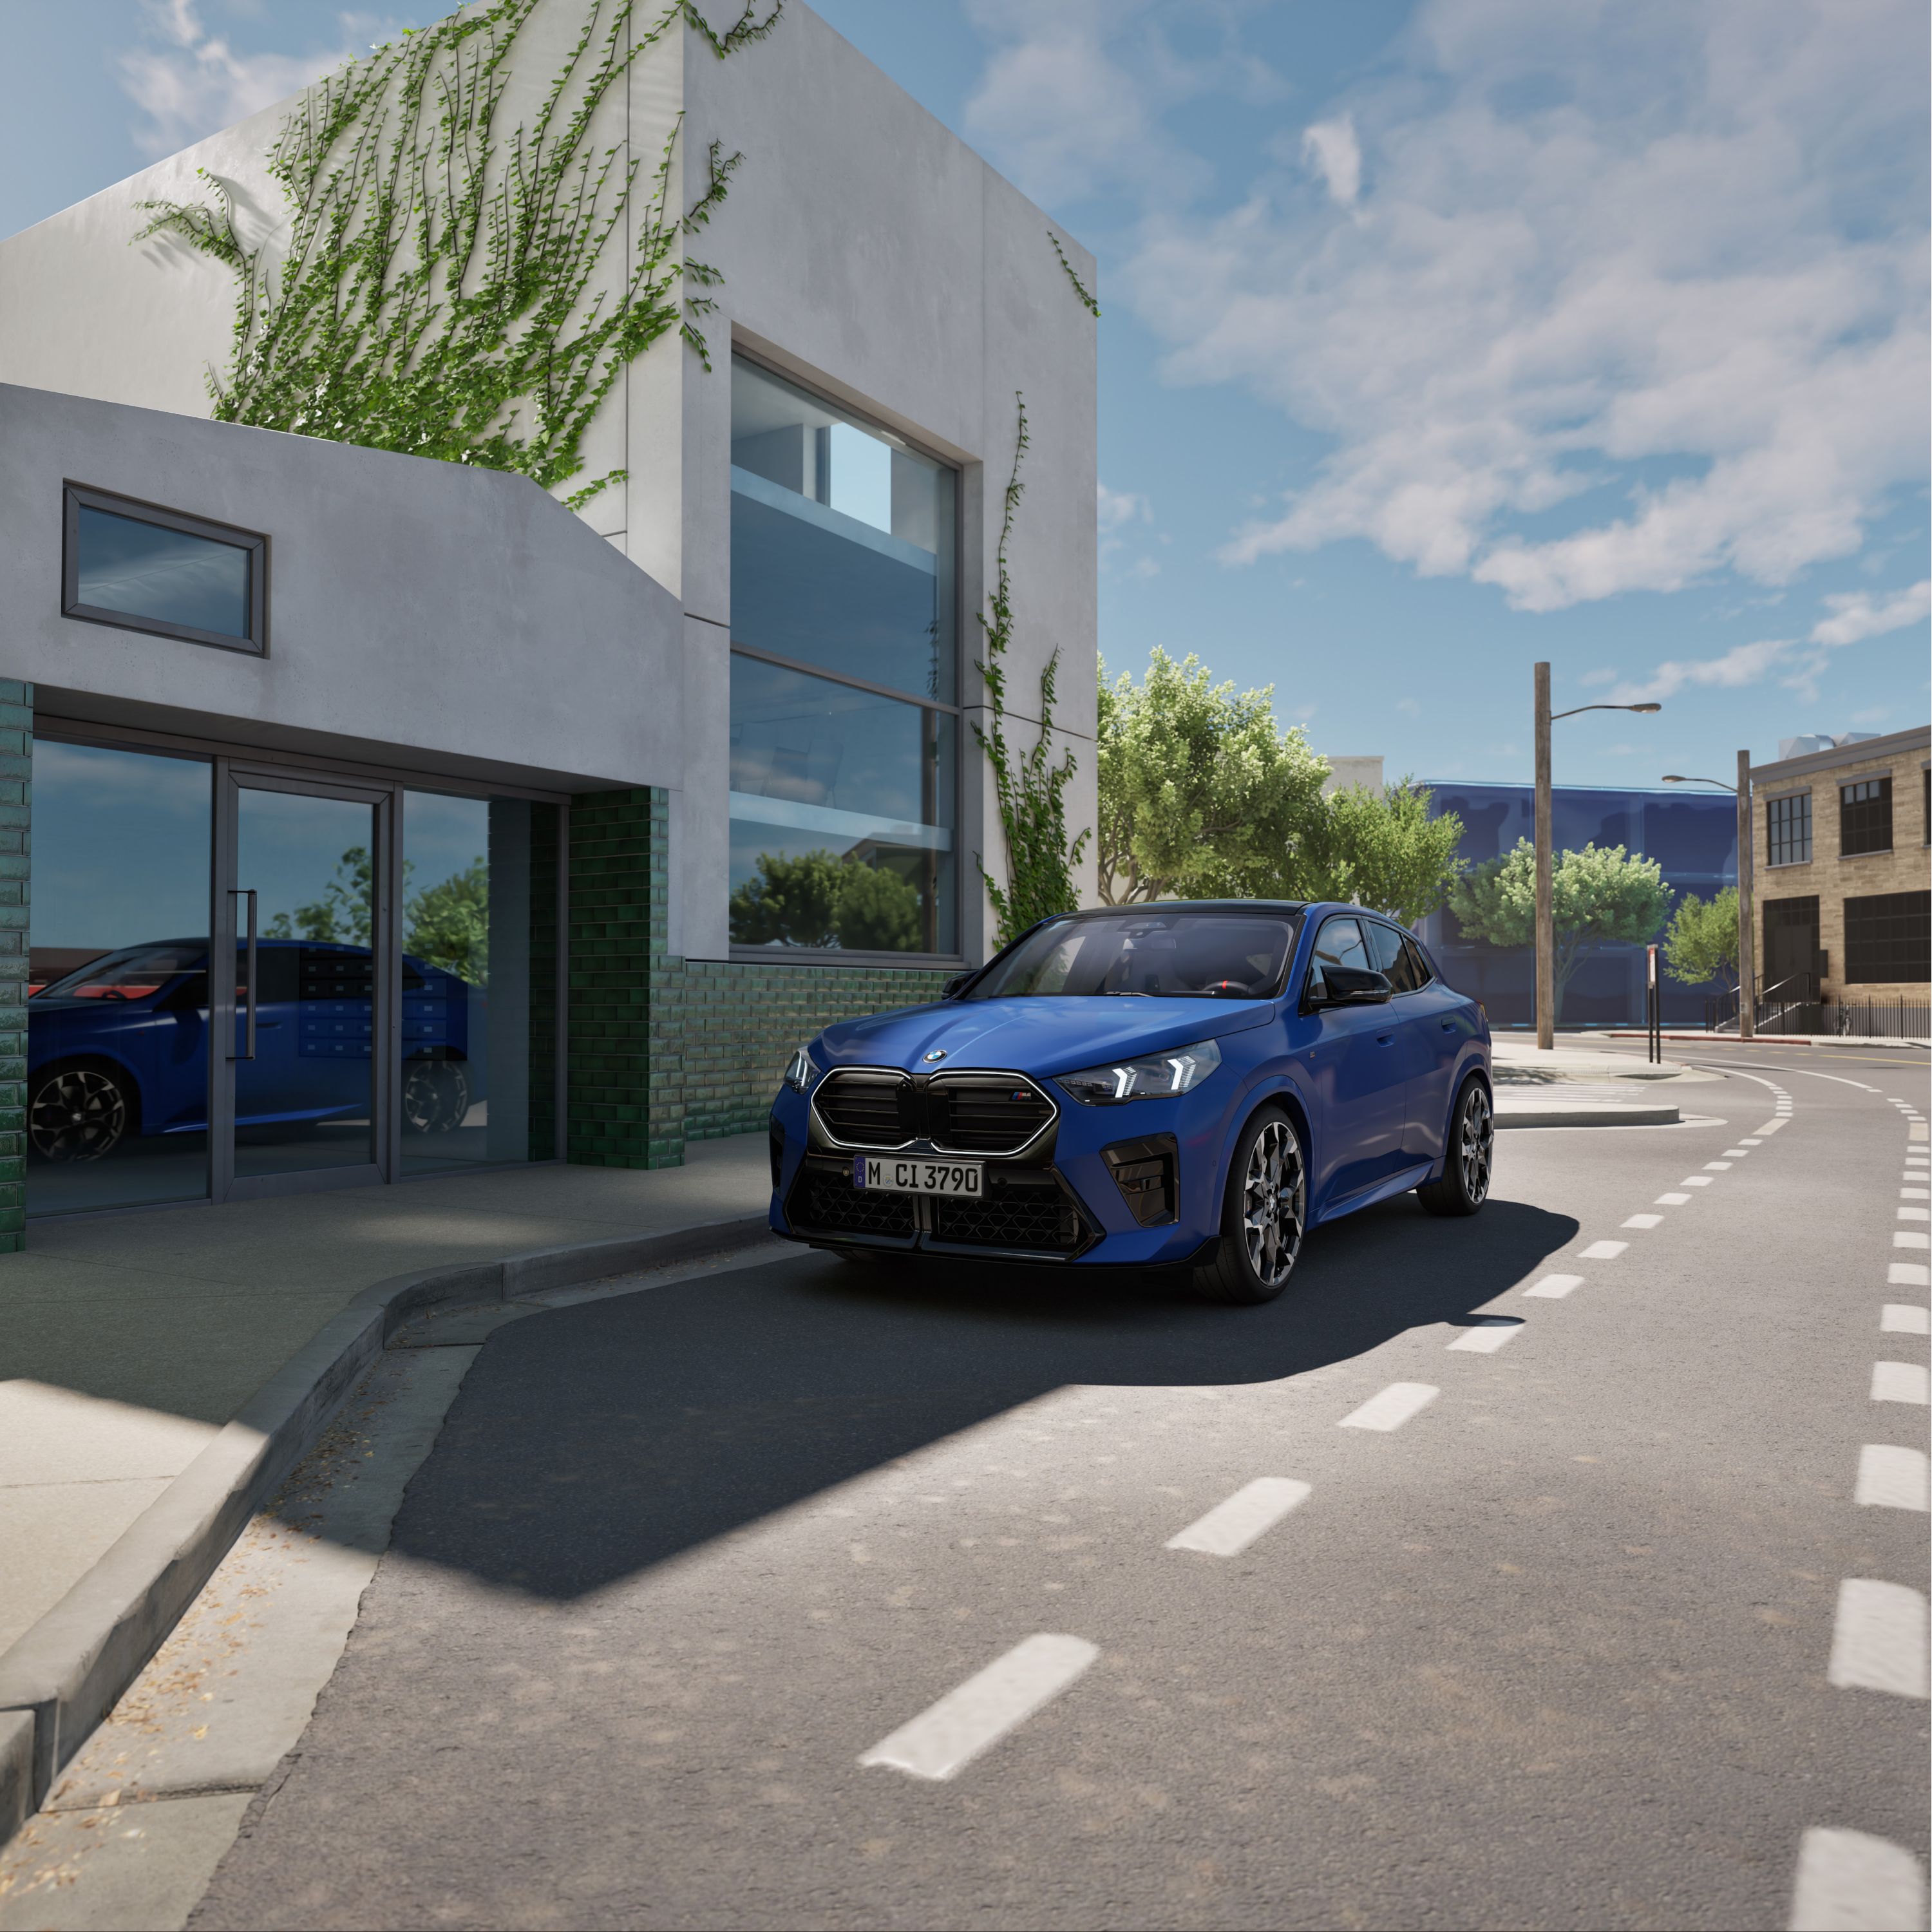 Видео на външната визия на BMW X2 M35i xDrive в цвят Frozen Portimao пред модерна бизнес сграда в градска среда 